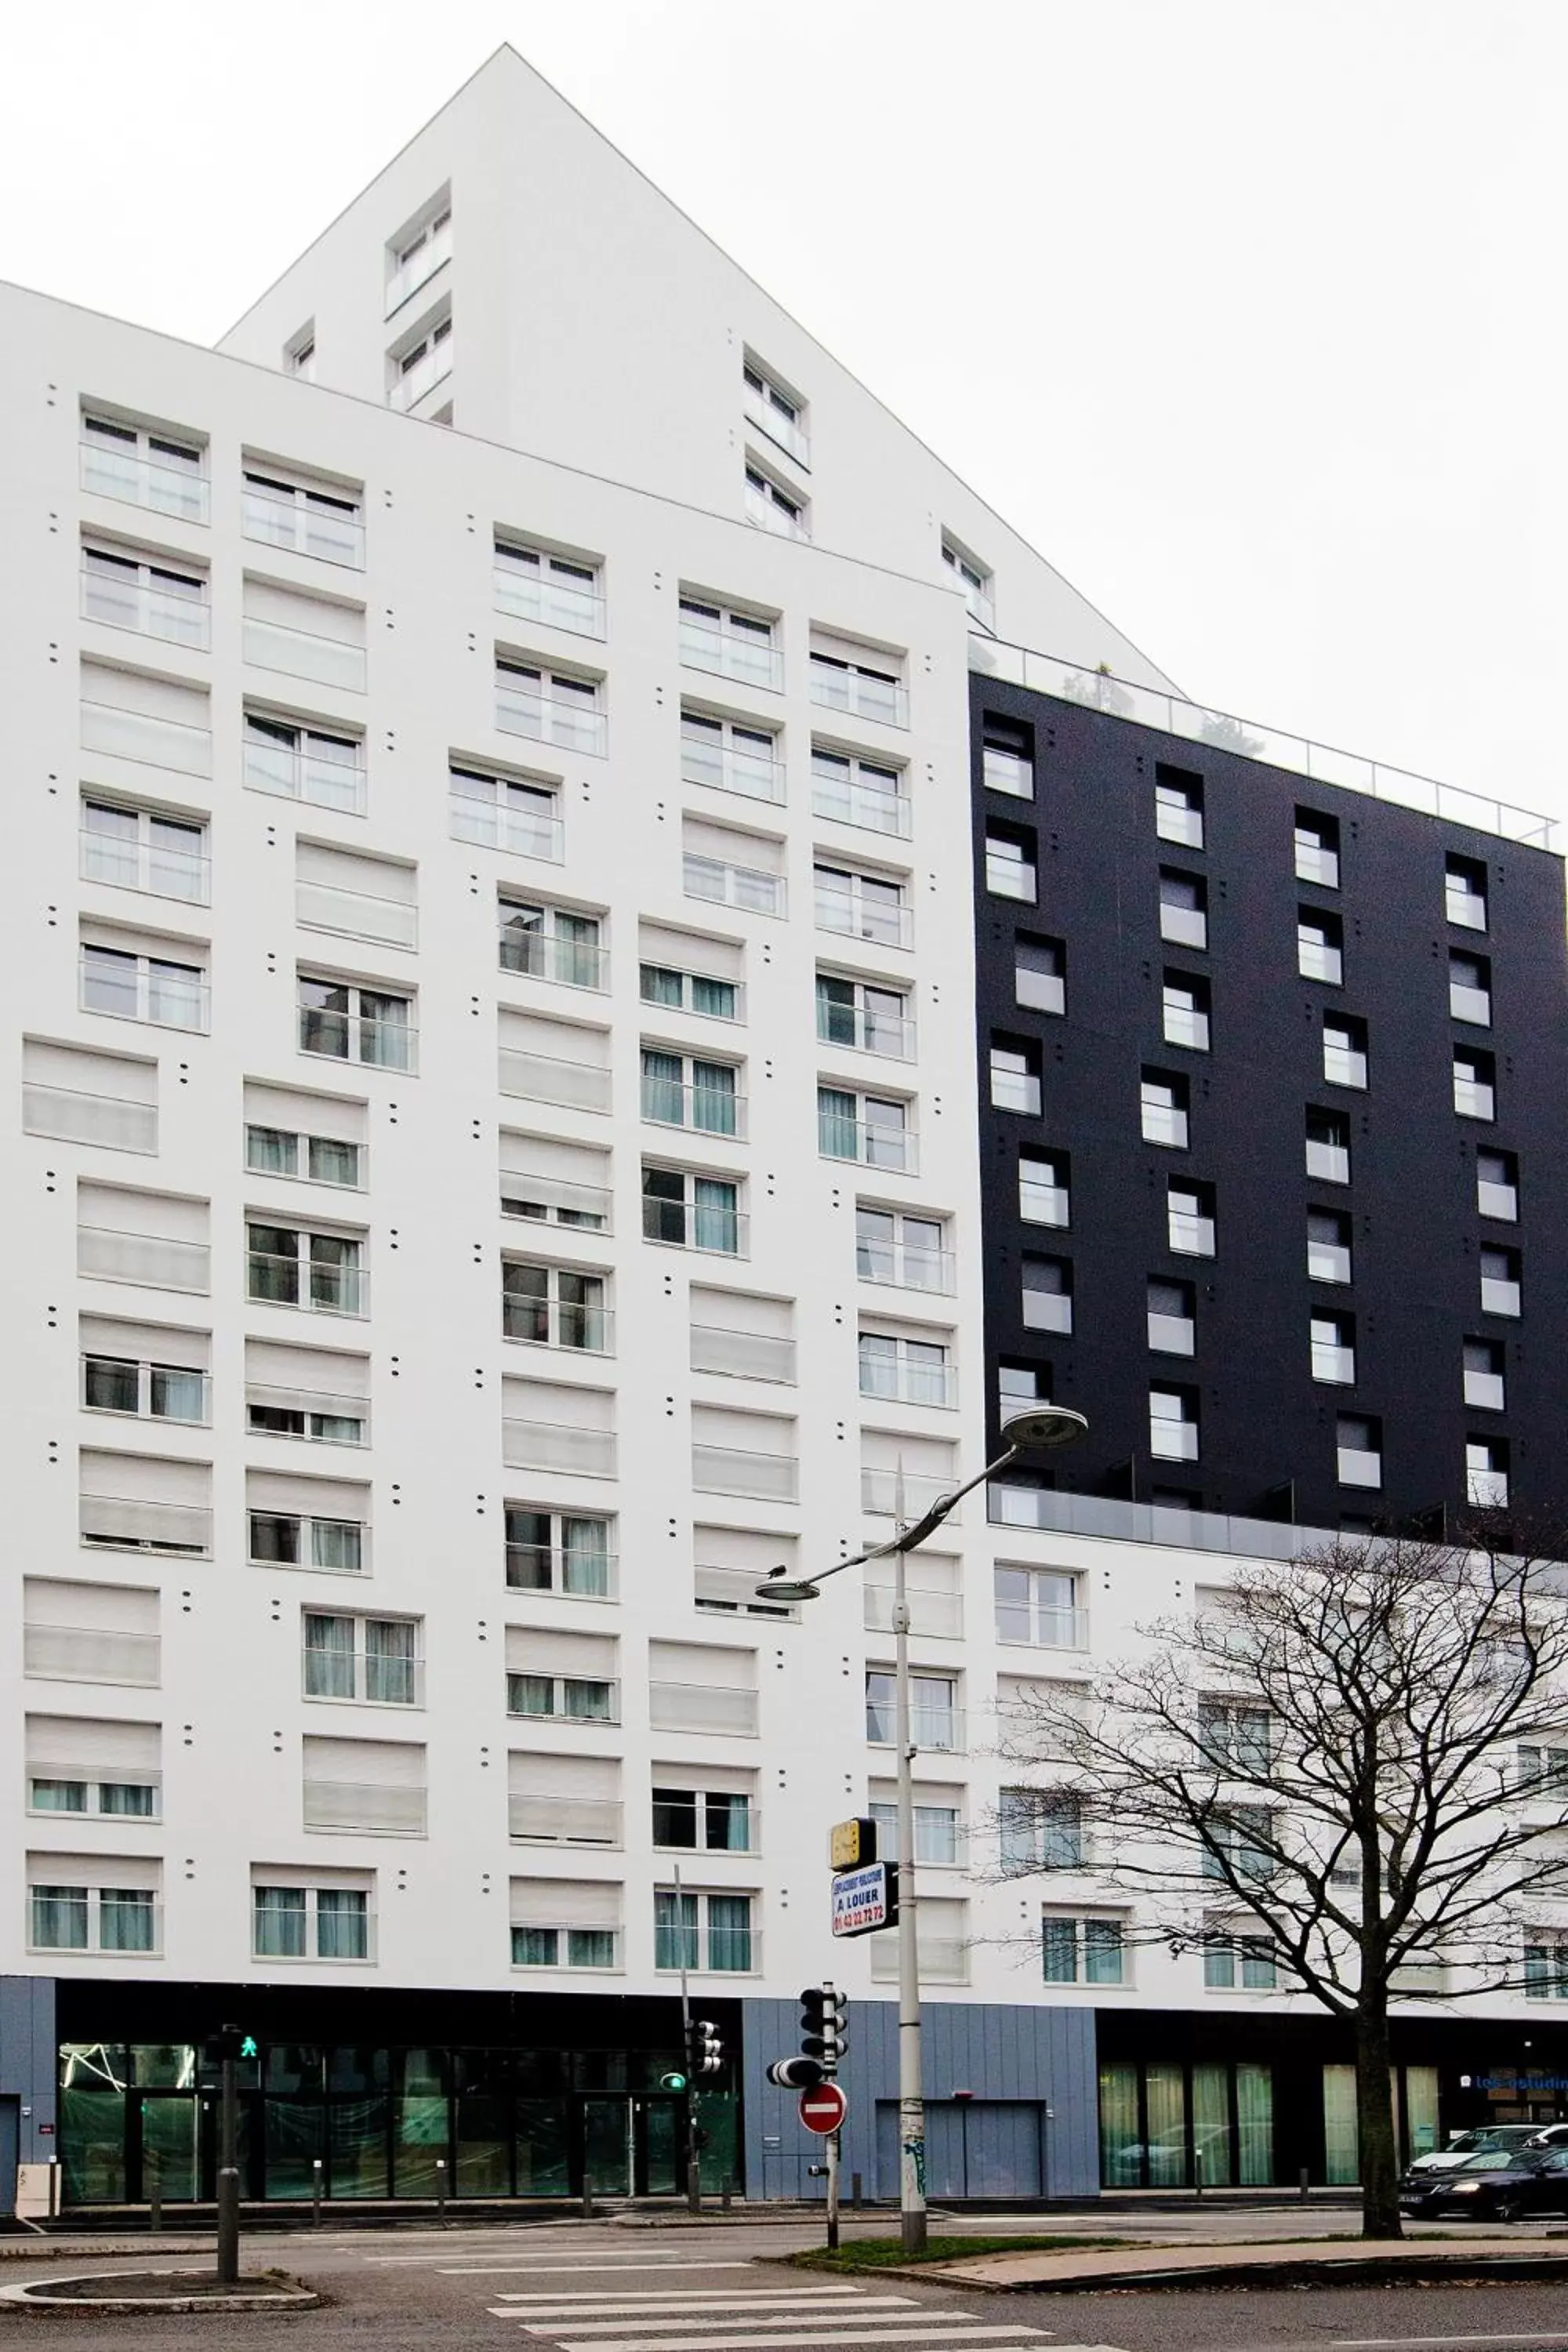 Property Building in Séjours & Affaires Paris Bagnolet